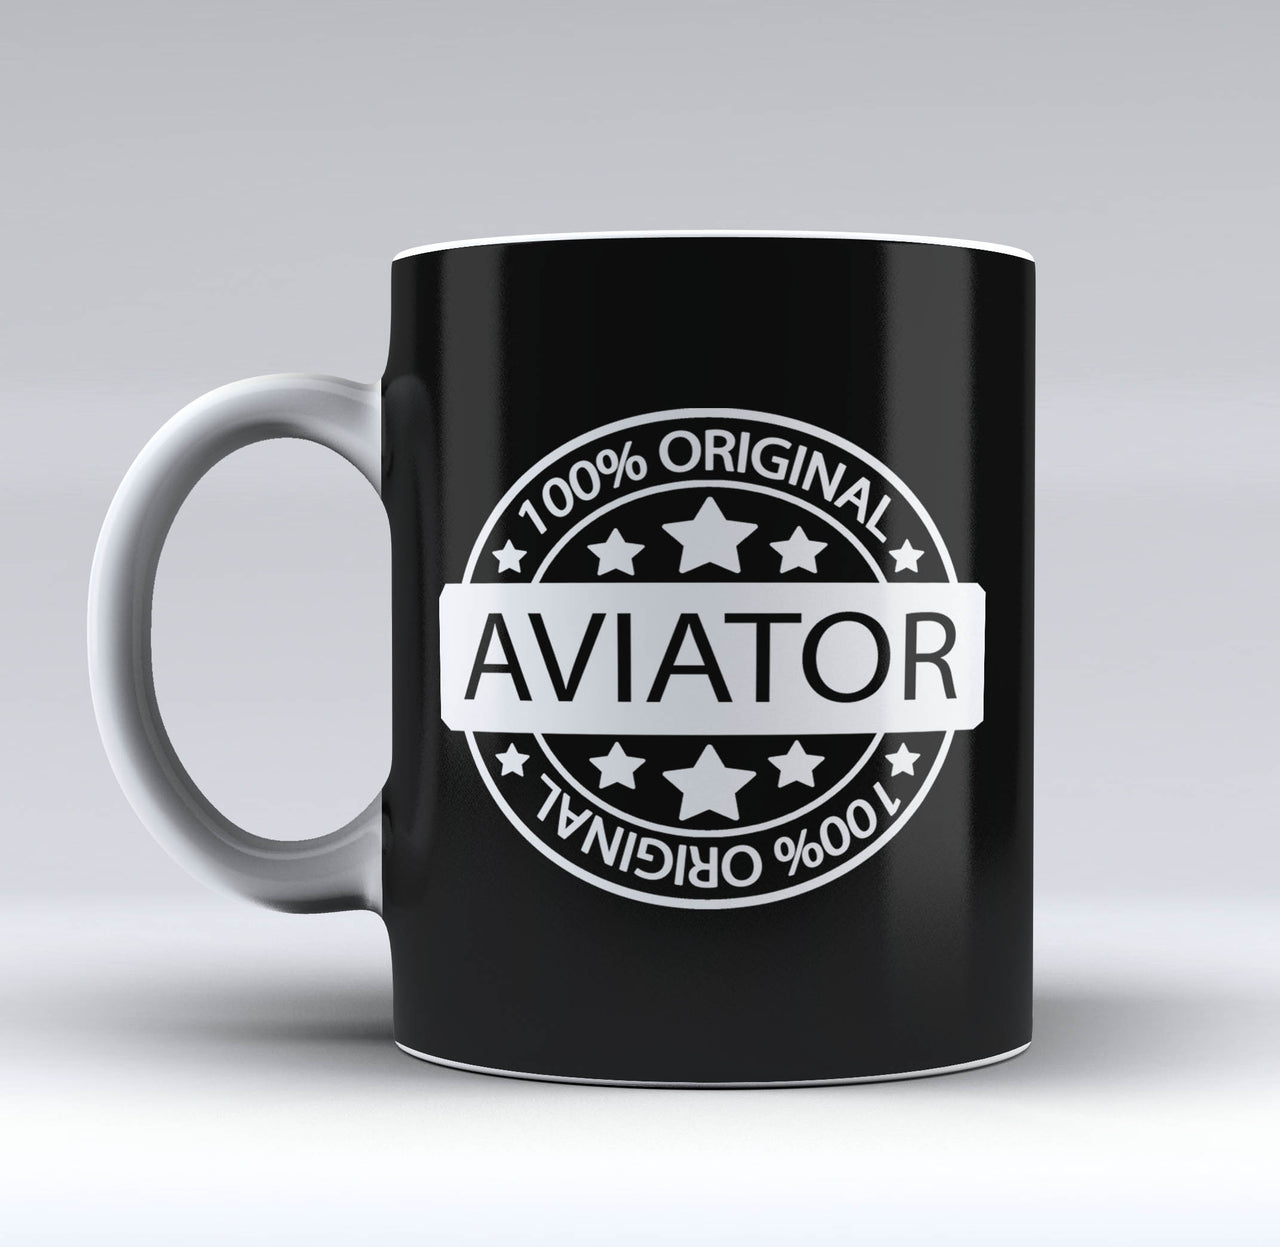 %100 Original Aviator Designed Mugs